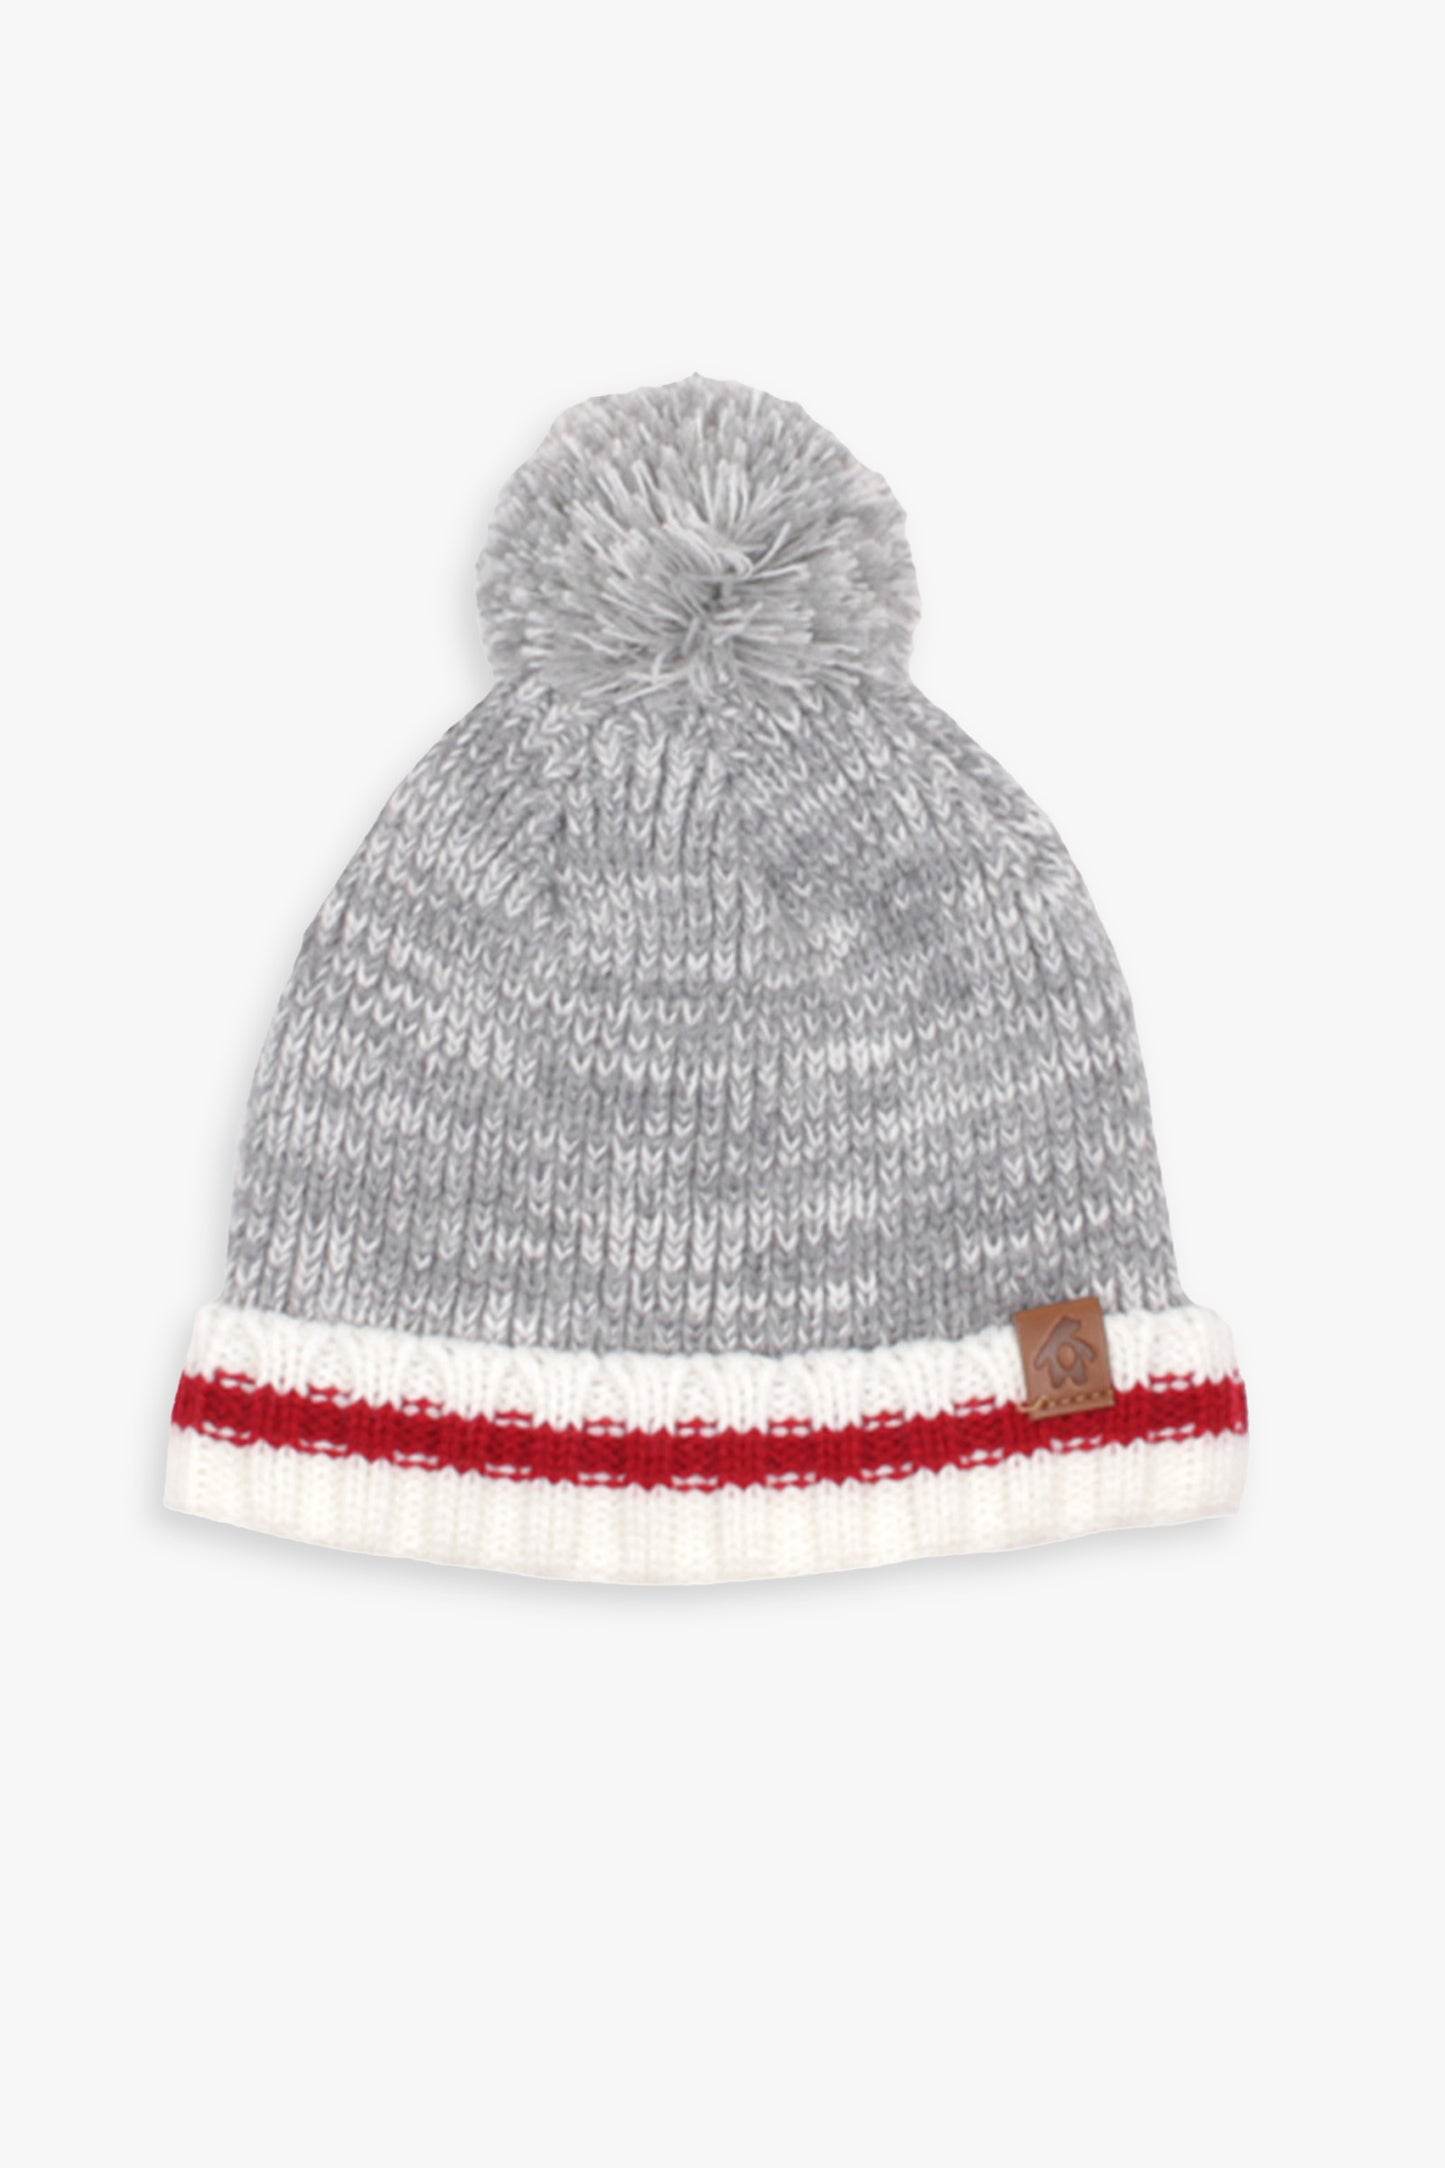 Baby Unisex Grey Rib Knit Pom-Pom Winter Toque Hat